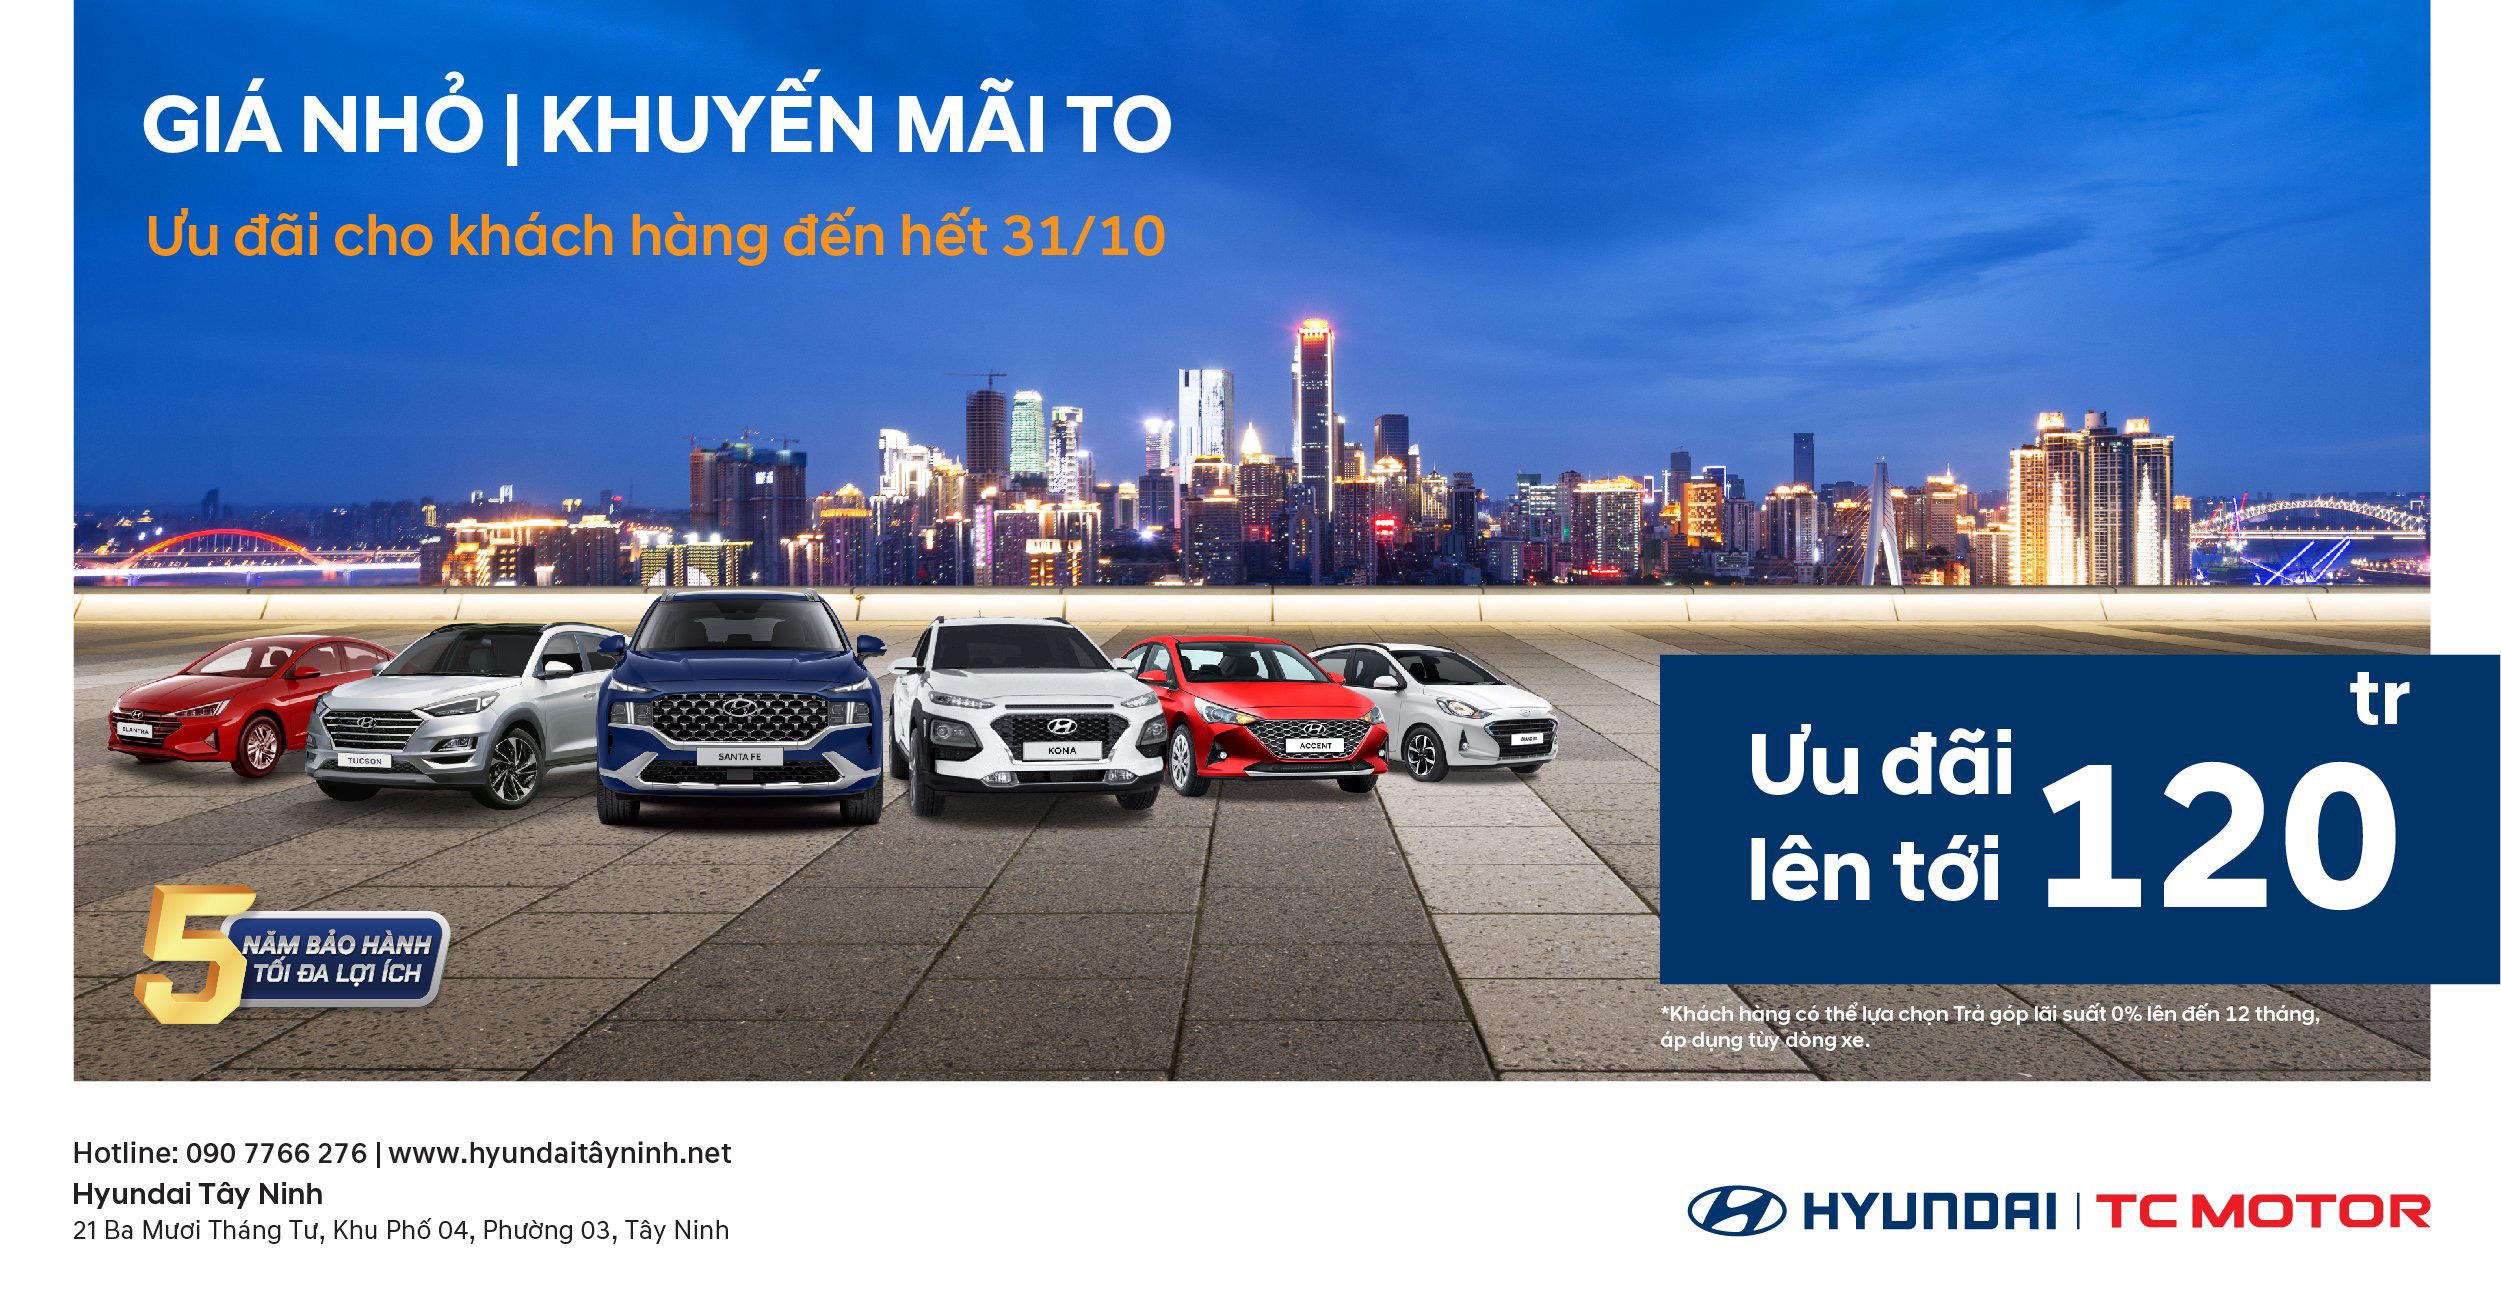 Hyundai Tây Ninh triển khai chương trình khuyến mãi tháng 10 cực sốc: ” GIÁ NHỎ - KHUYẾN MÃI TO